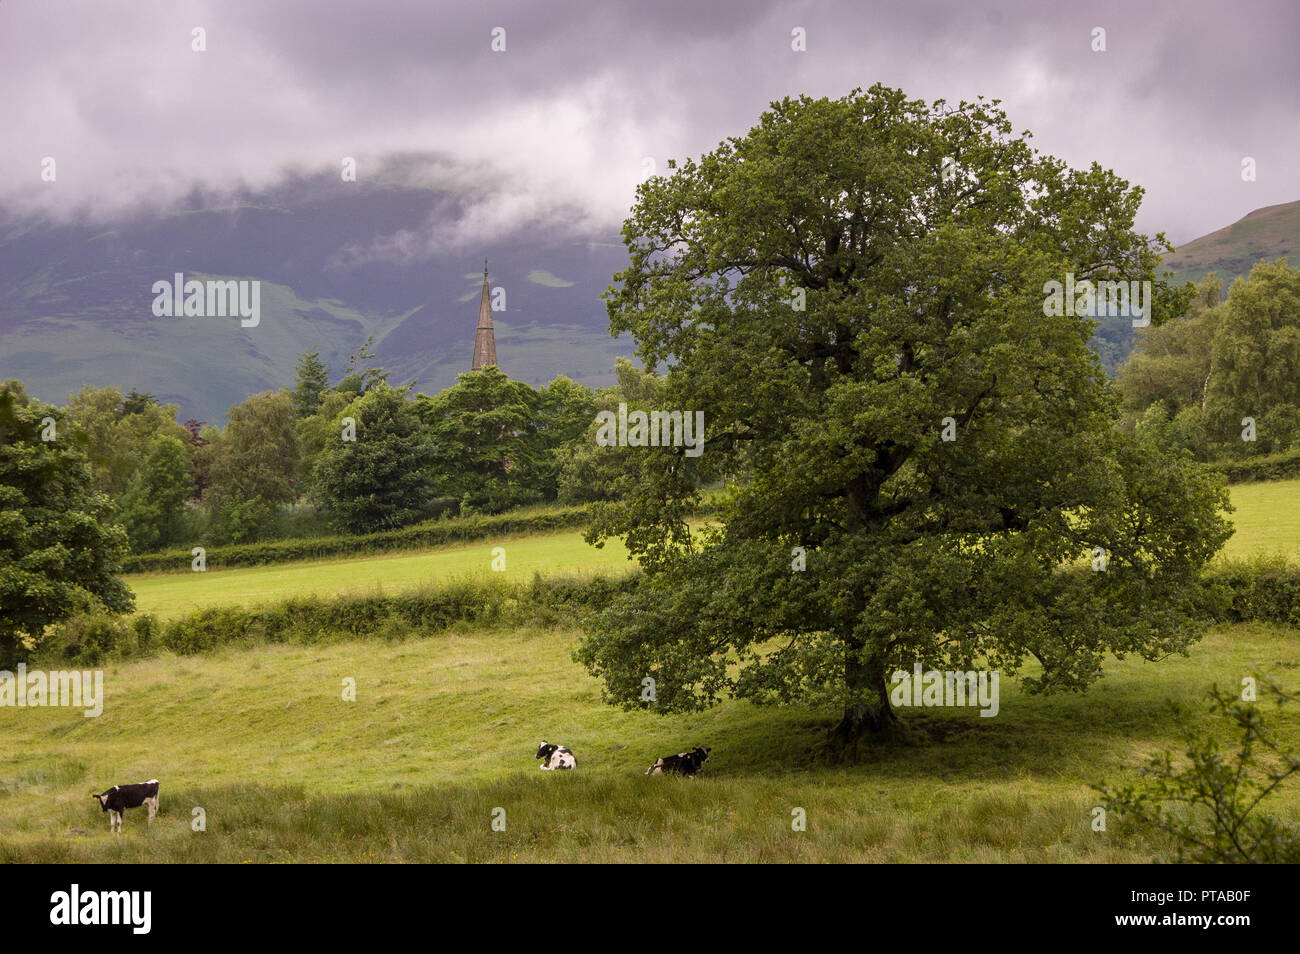 Les vaches se trouvent sous un chêne avec la flèche de l'église paroissiale de Keswick et derrière la montagne Skiddaw en Angleterre du Lake District. Banque D'Images